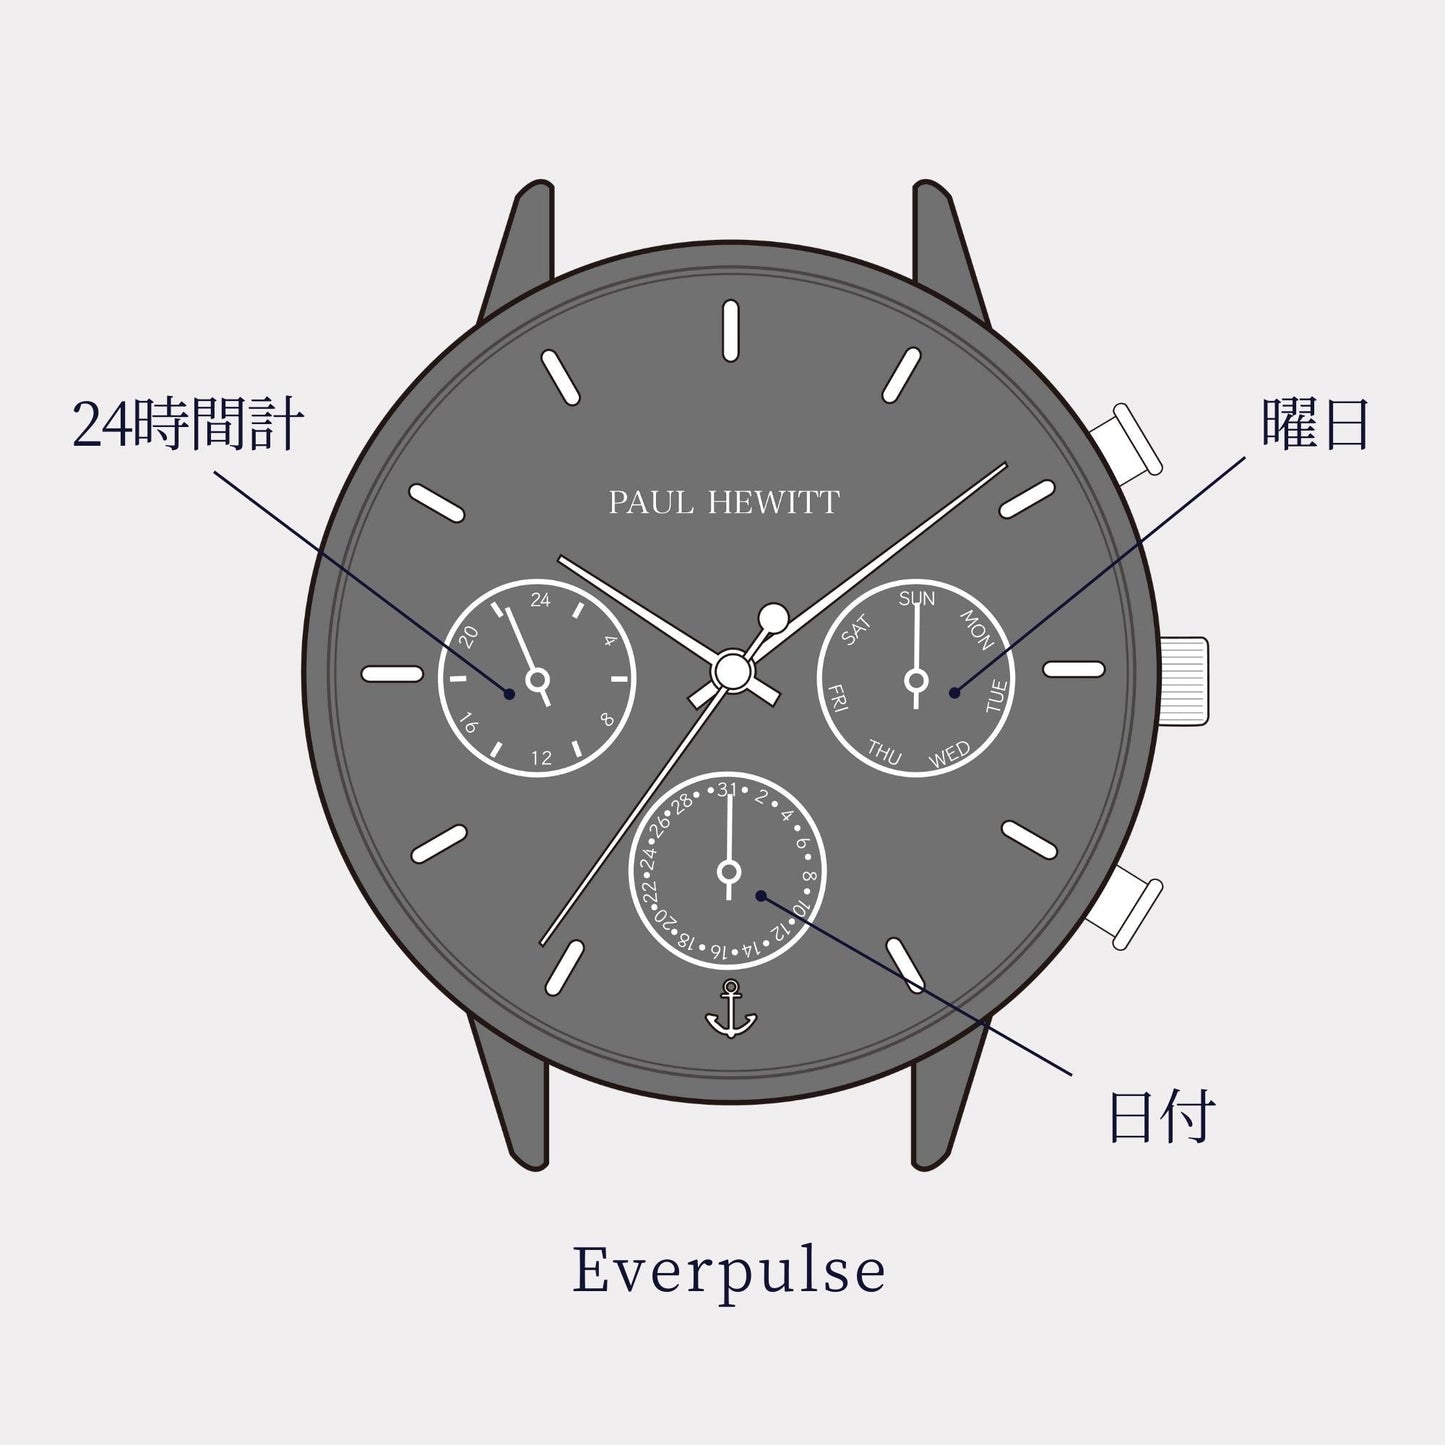 Everpulse ローズゴールド - ポールヒューイット日本公式サイト